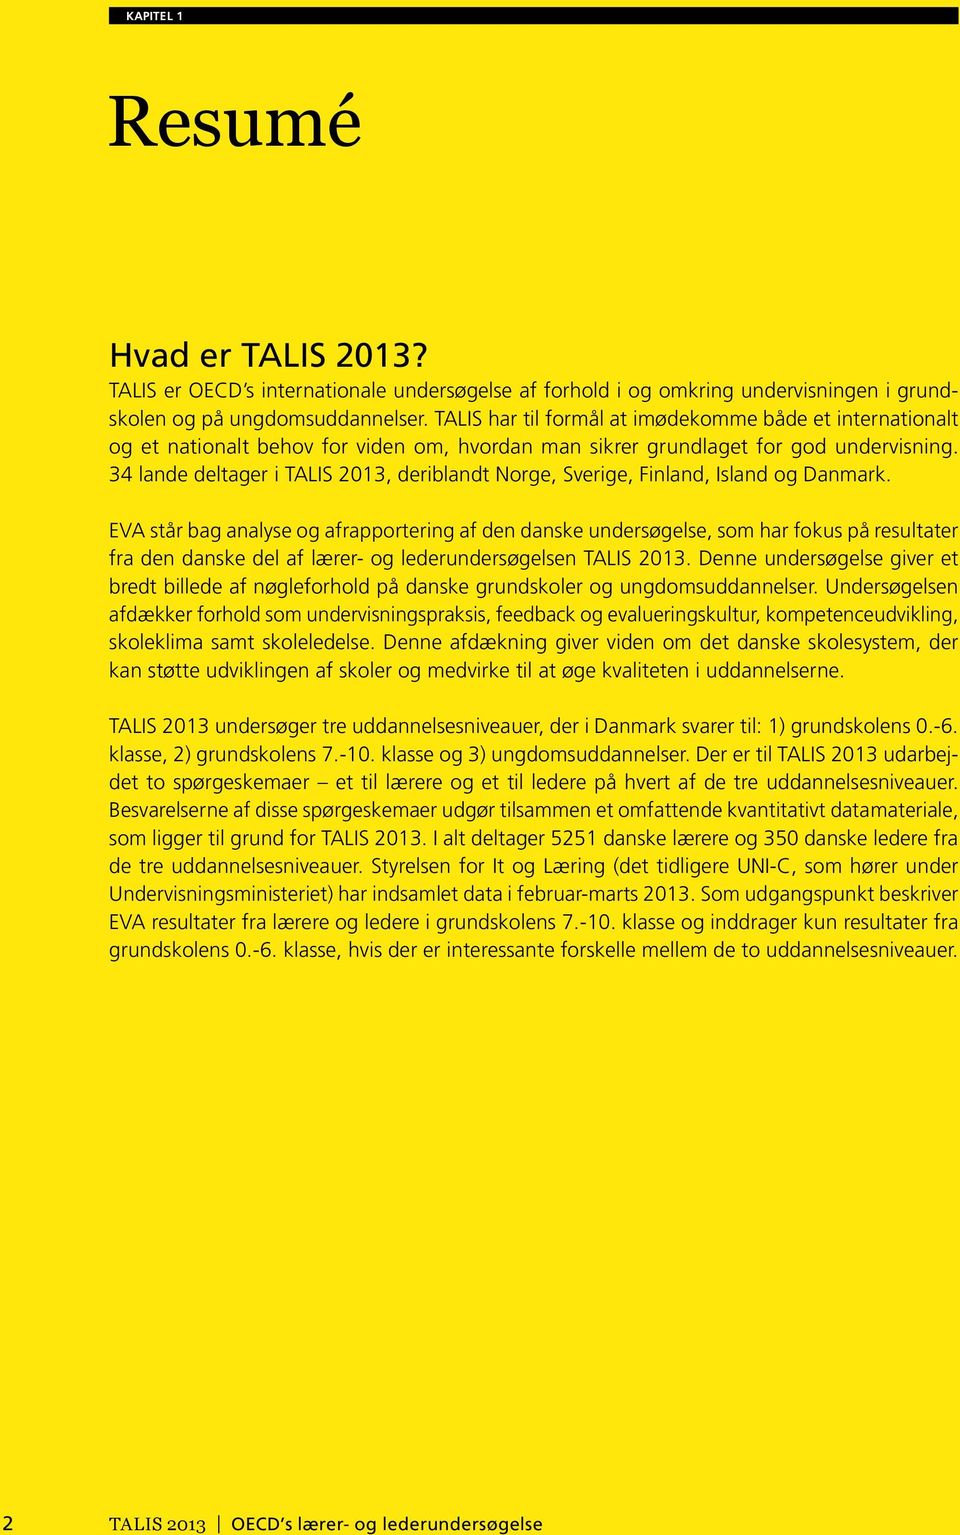 34 lande deltager i TALIS 2013, deriblandt Norge, Sverige, Finland, Island og Danmark.